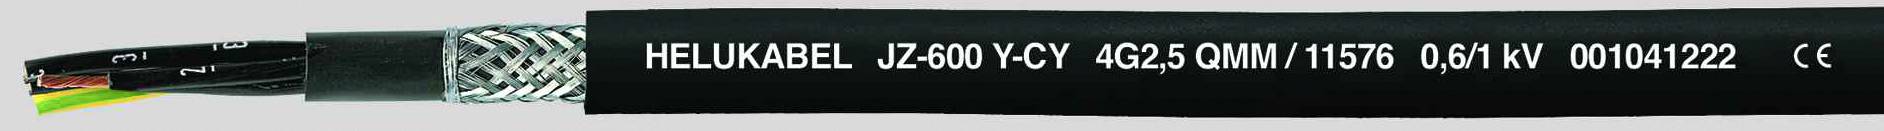 HELUKABEL JZ-600-Y-CY Steuerleitung 4 G 1 mm² Schwarz 11518-500 500 m